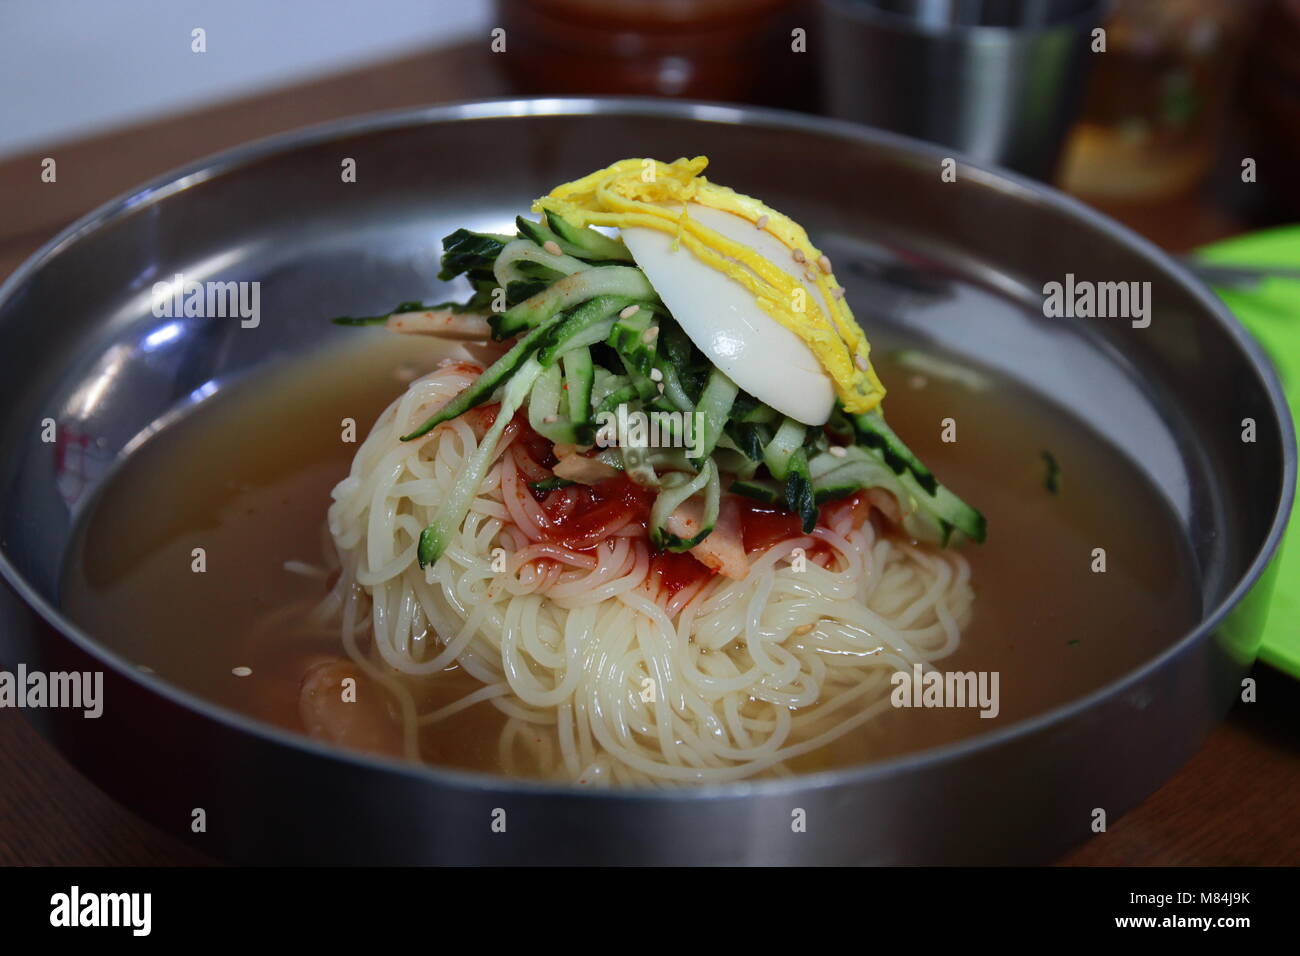 Korean cold noodles immagini e fotografie stock ad alta risoluzione - Alamy